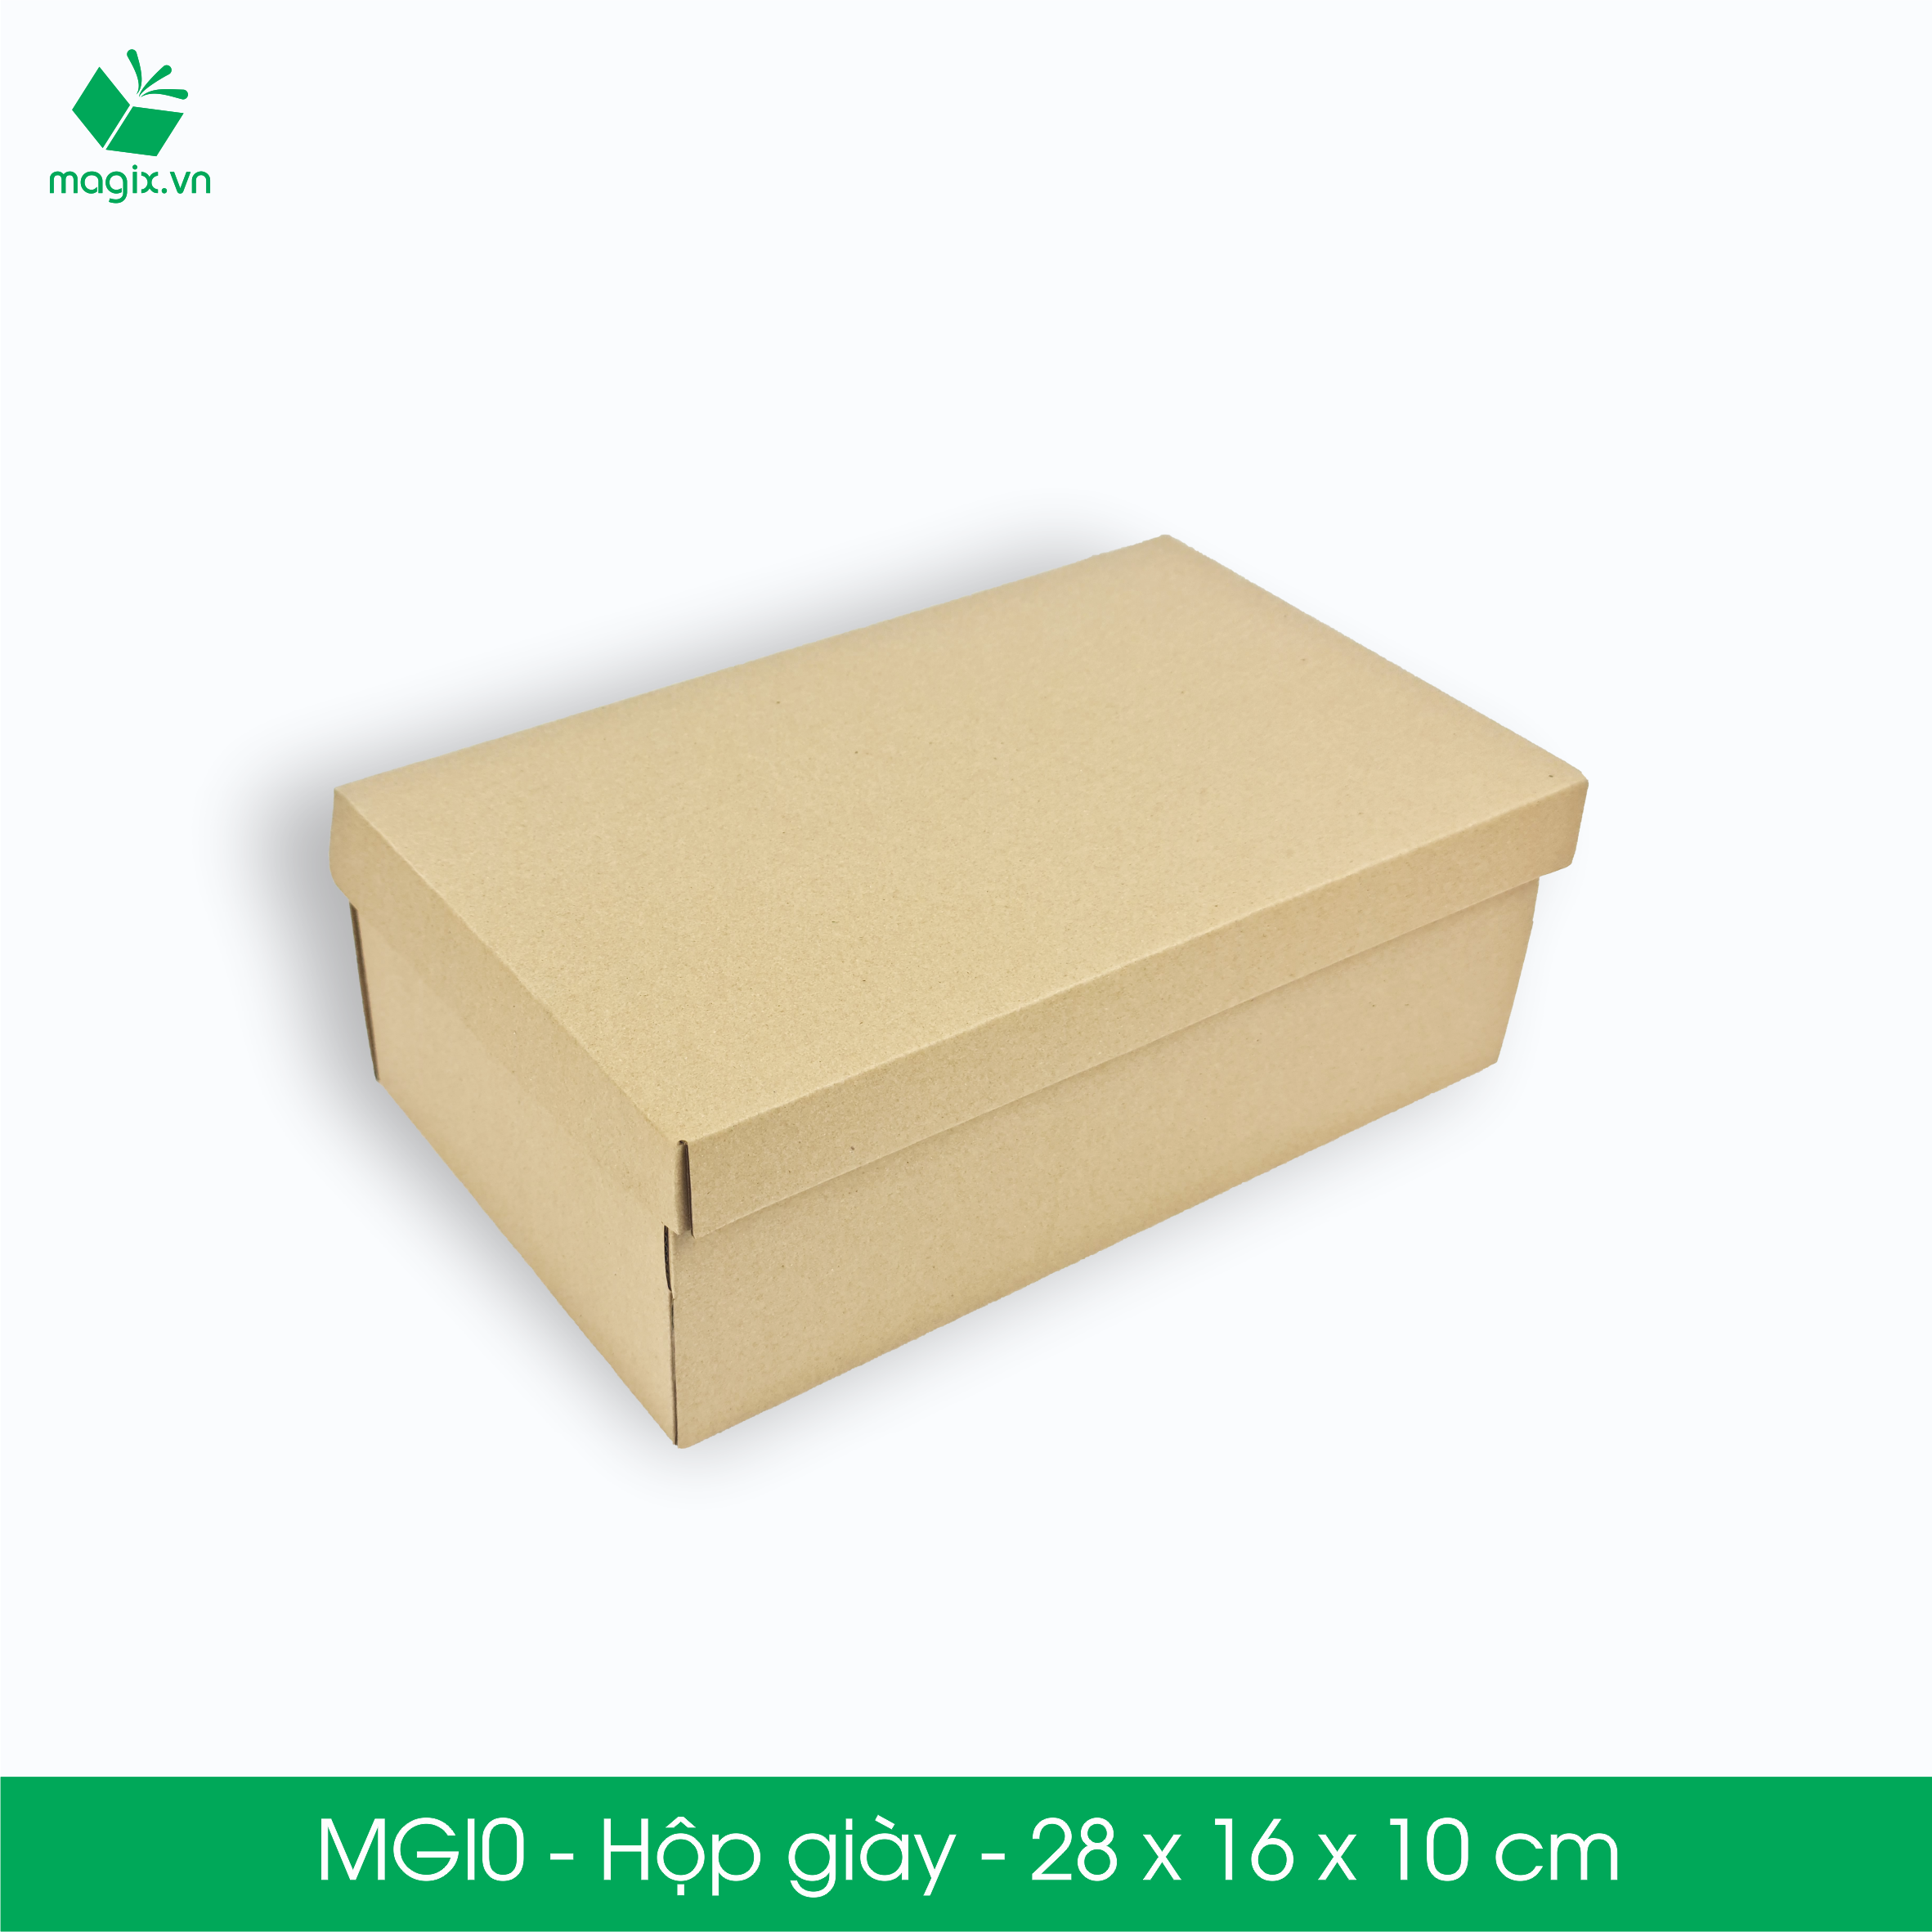 MGI0 - 28x16x10cm - 25 Hộp giày - Thùng hộp carton trơn đóng hàng